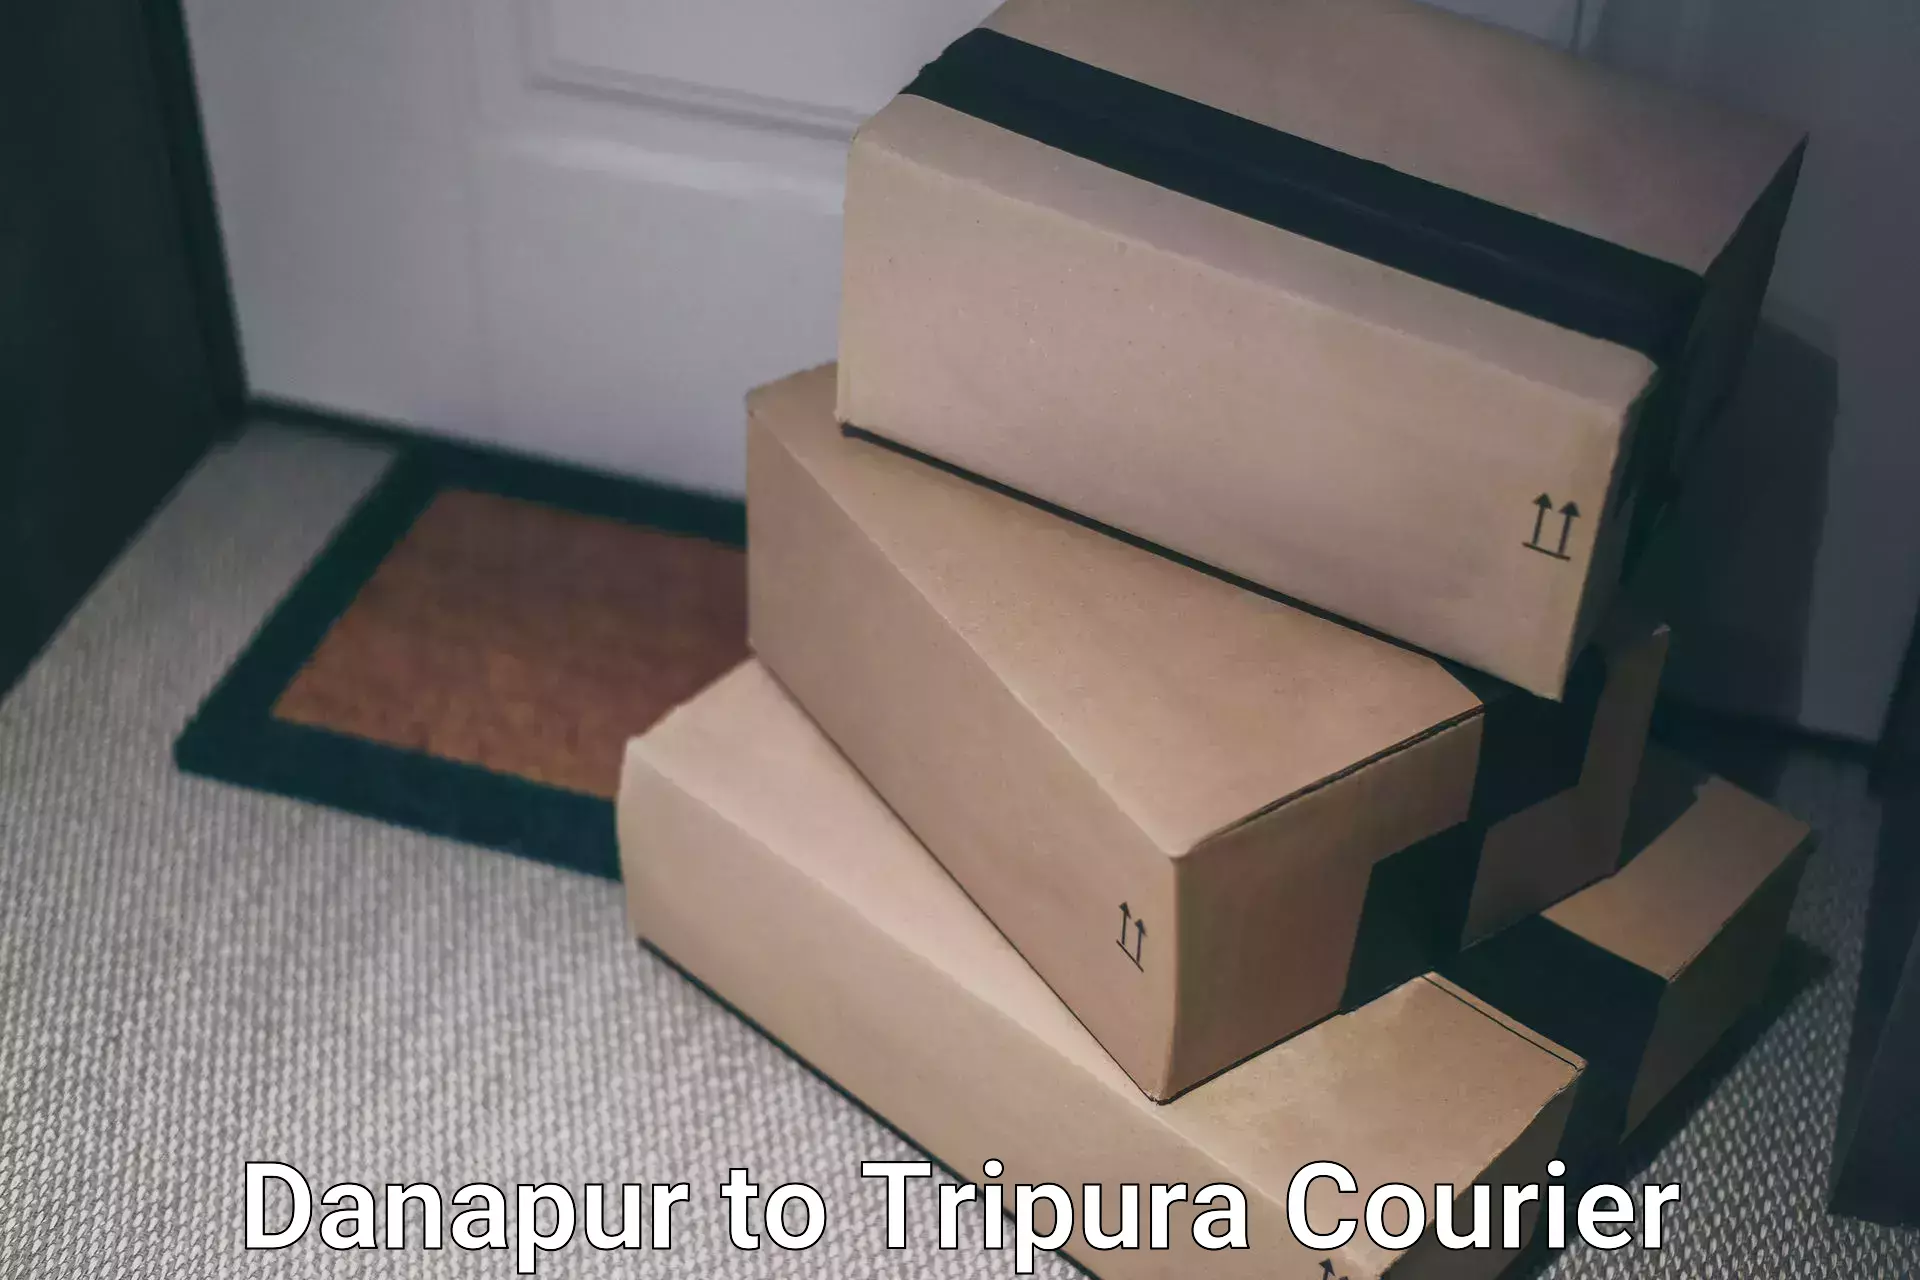 Reliable parcel services Danapur to Tripura